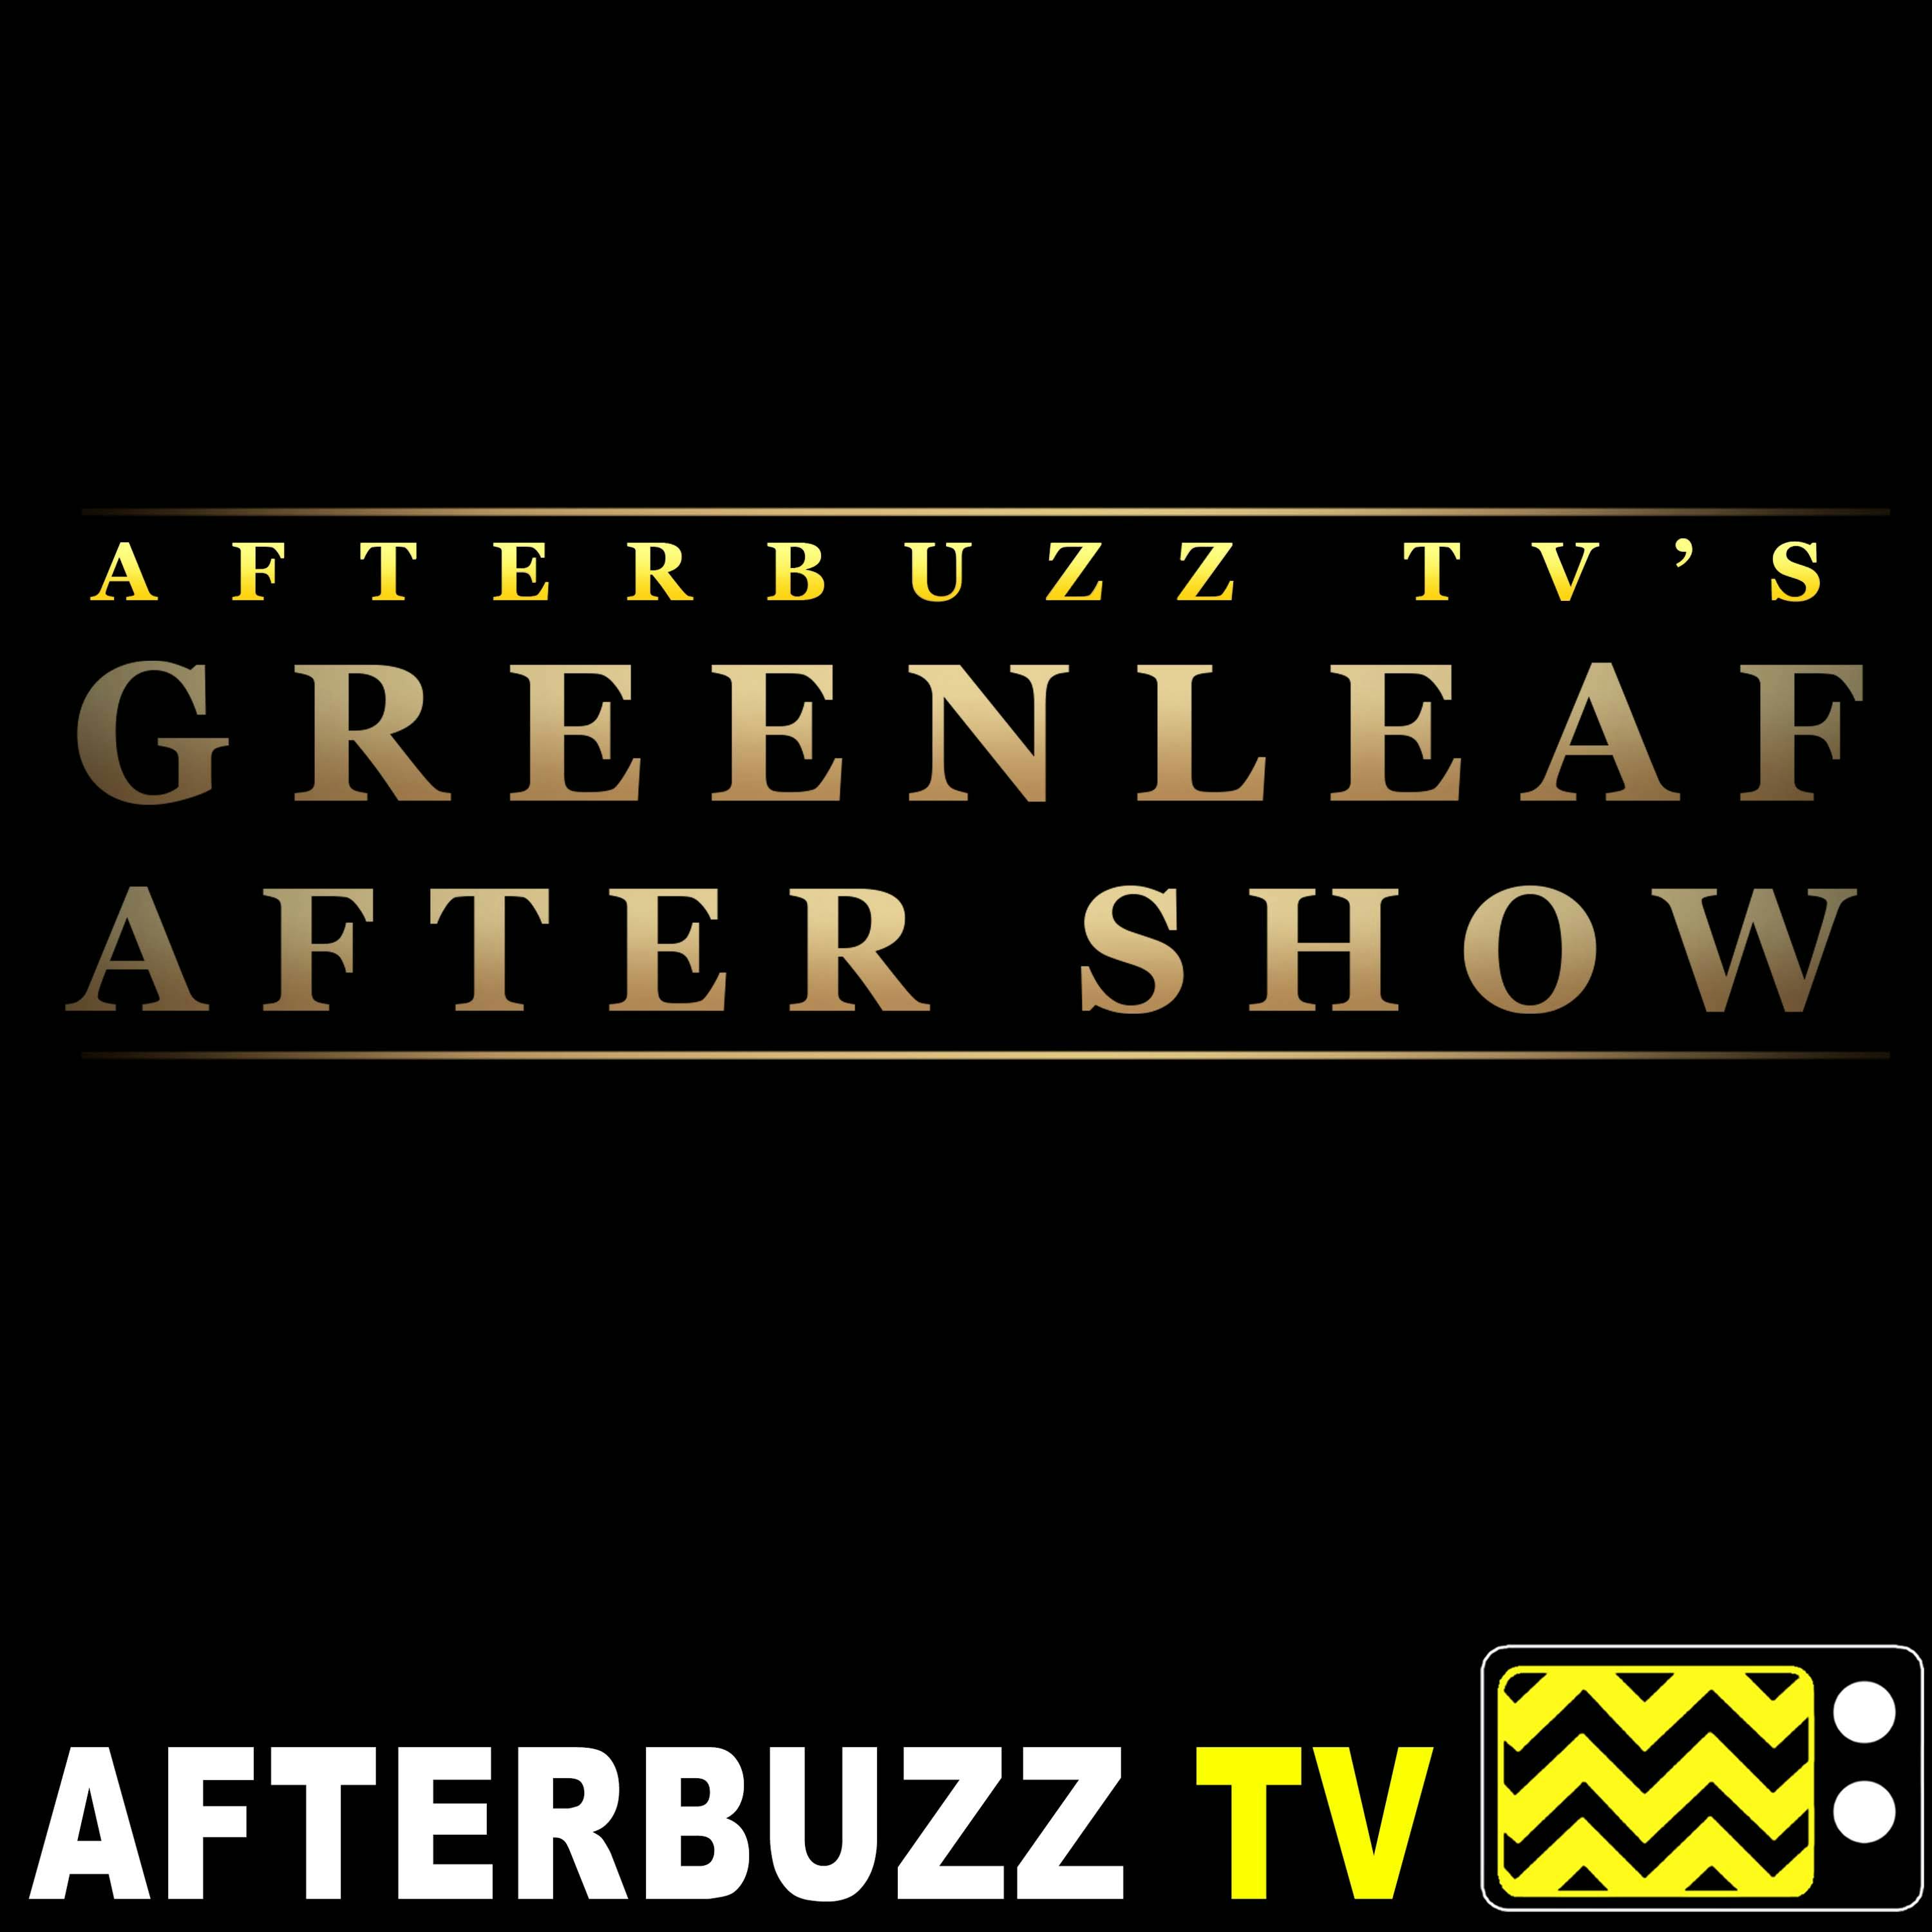 Merle Dandridge Guests on ”Unwanted” Season 4 Episode 5 ’Greenleaf’ Review